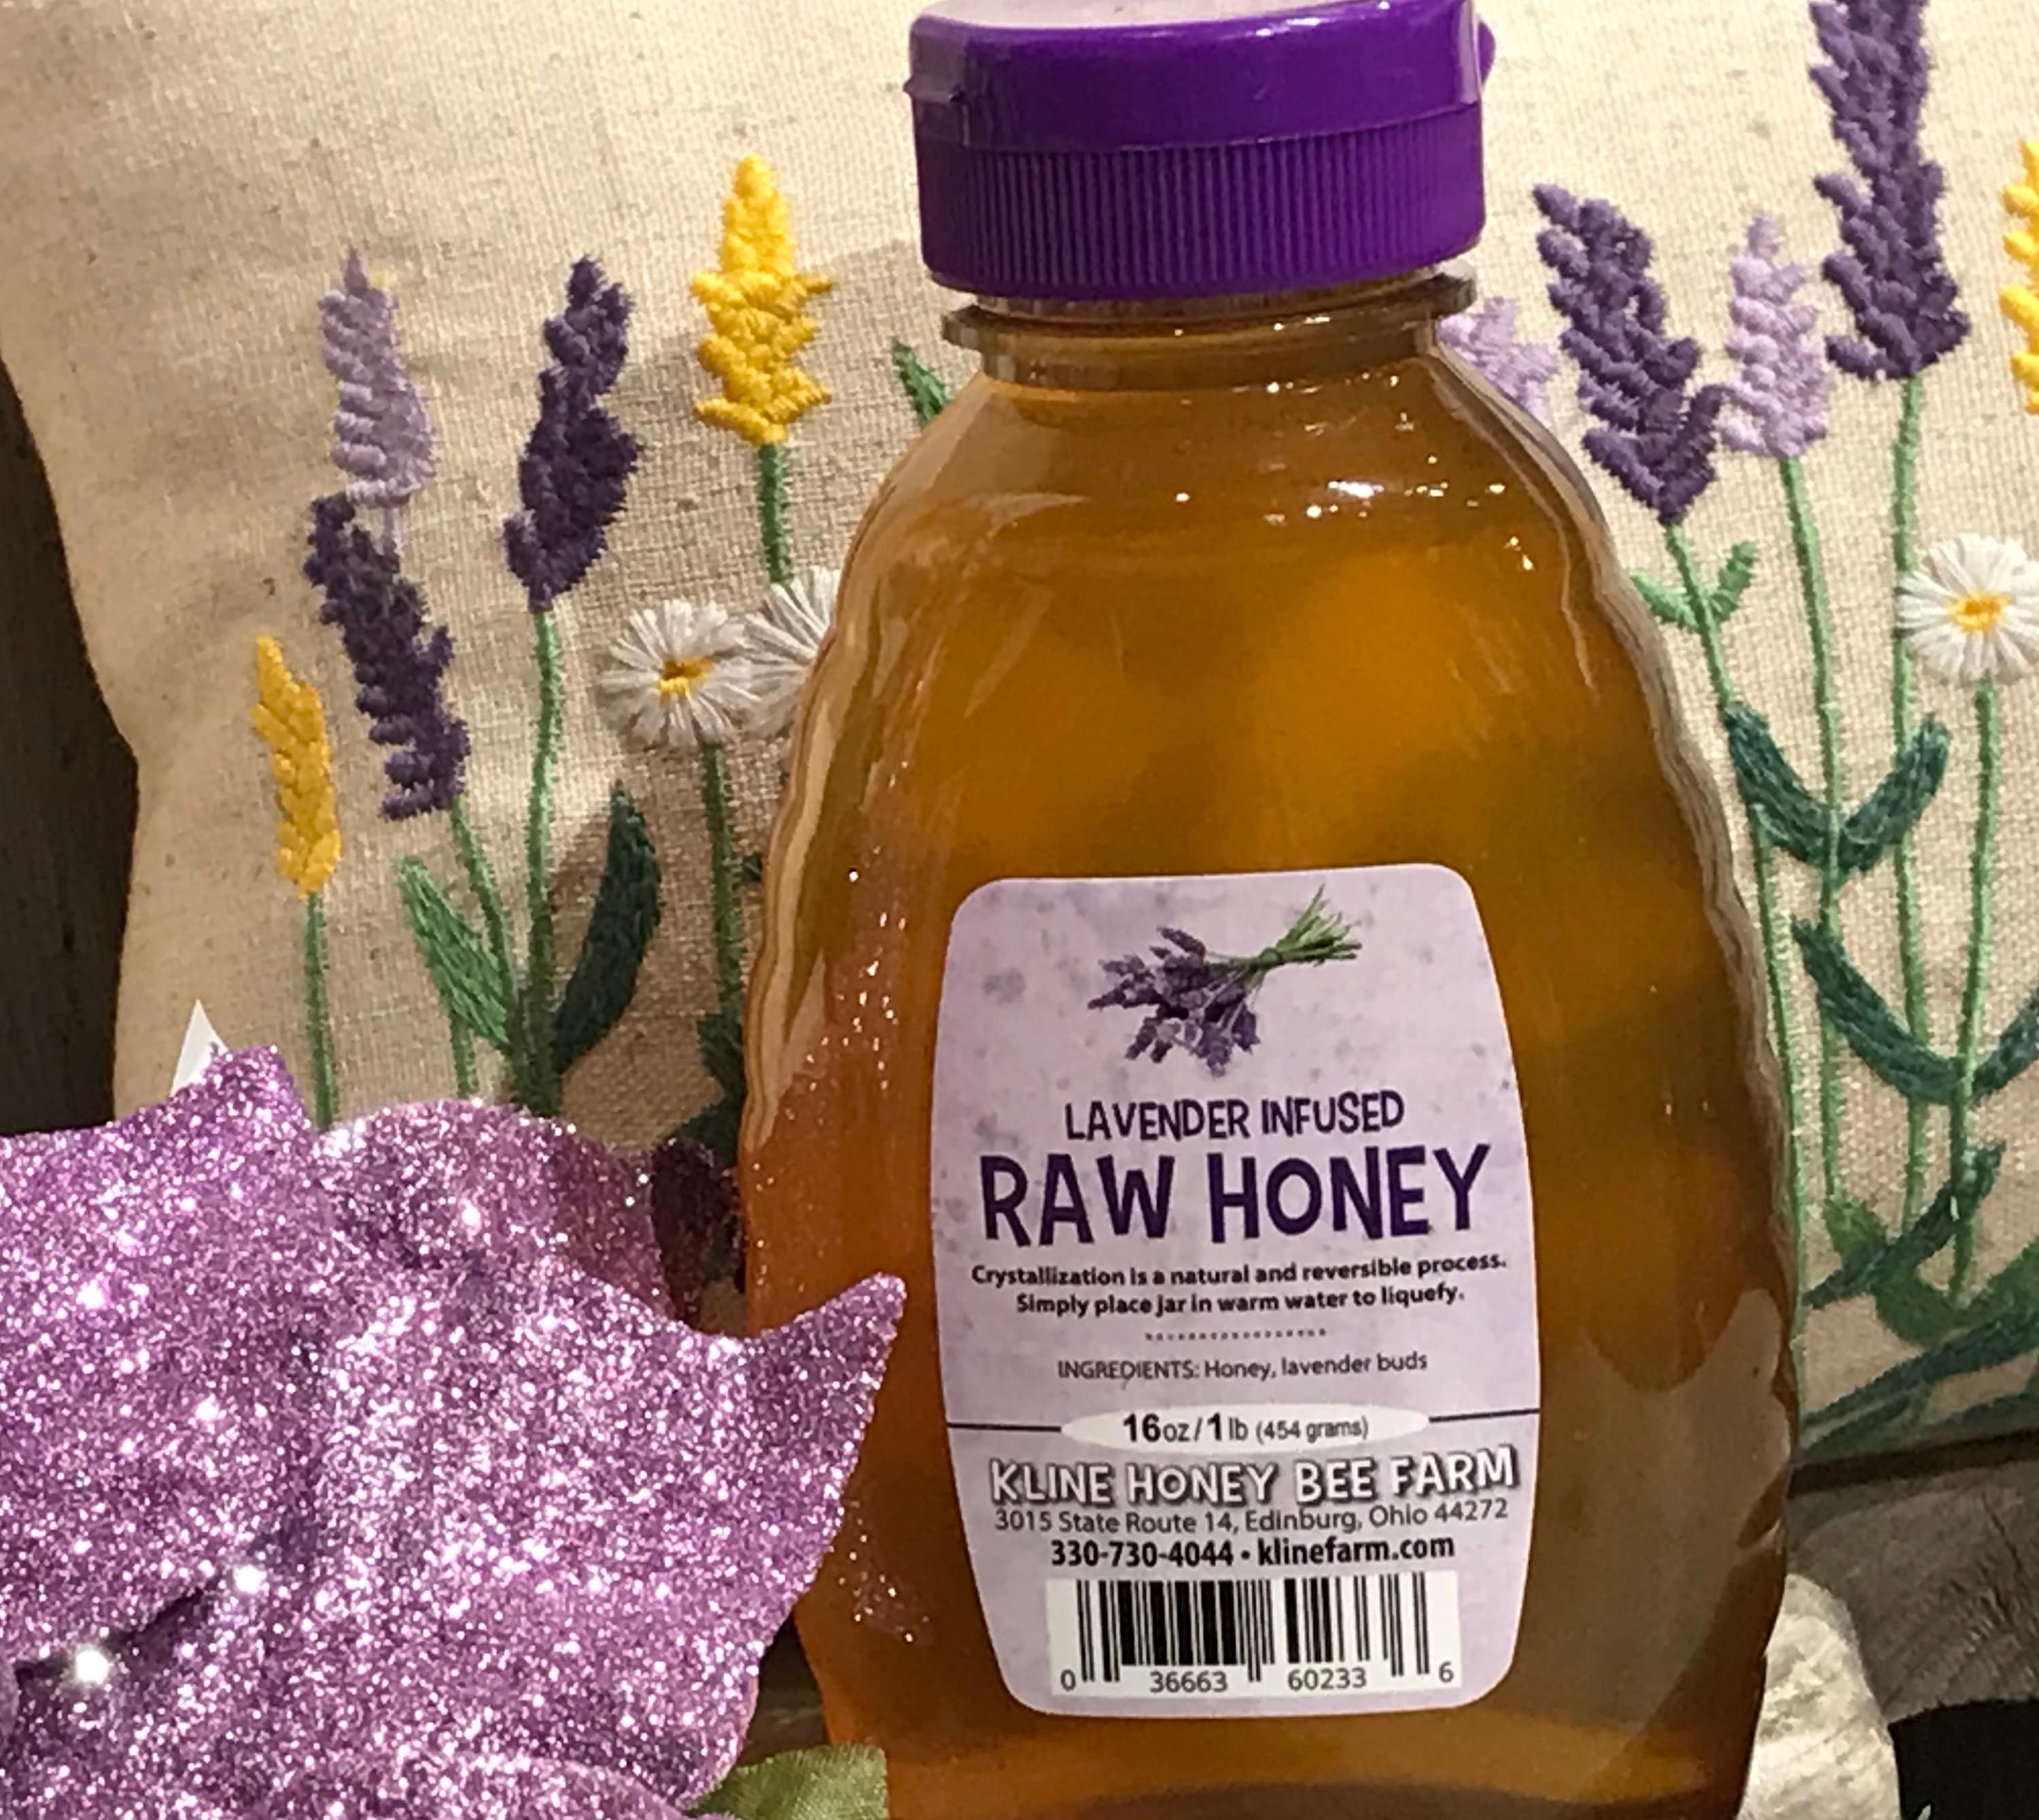 Honey Filled Candy - 1 lb (454 g) Bag